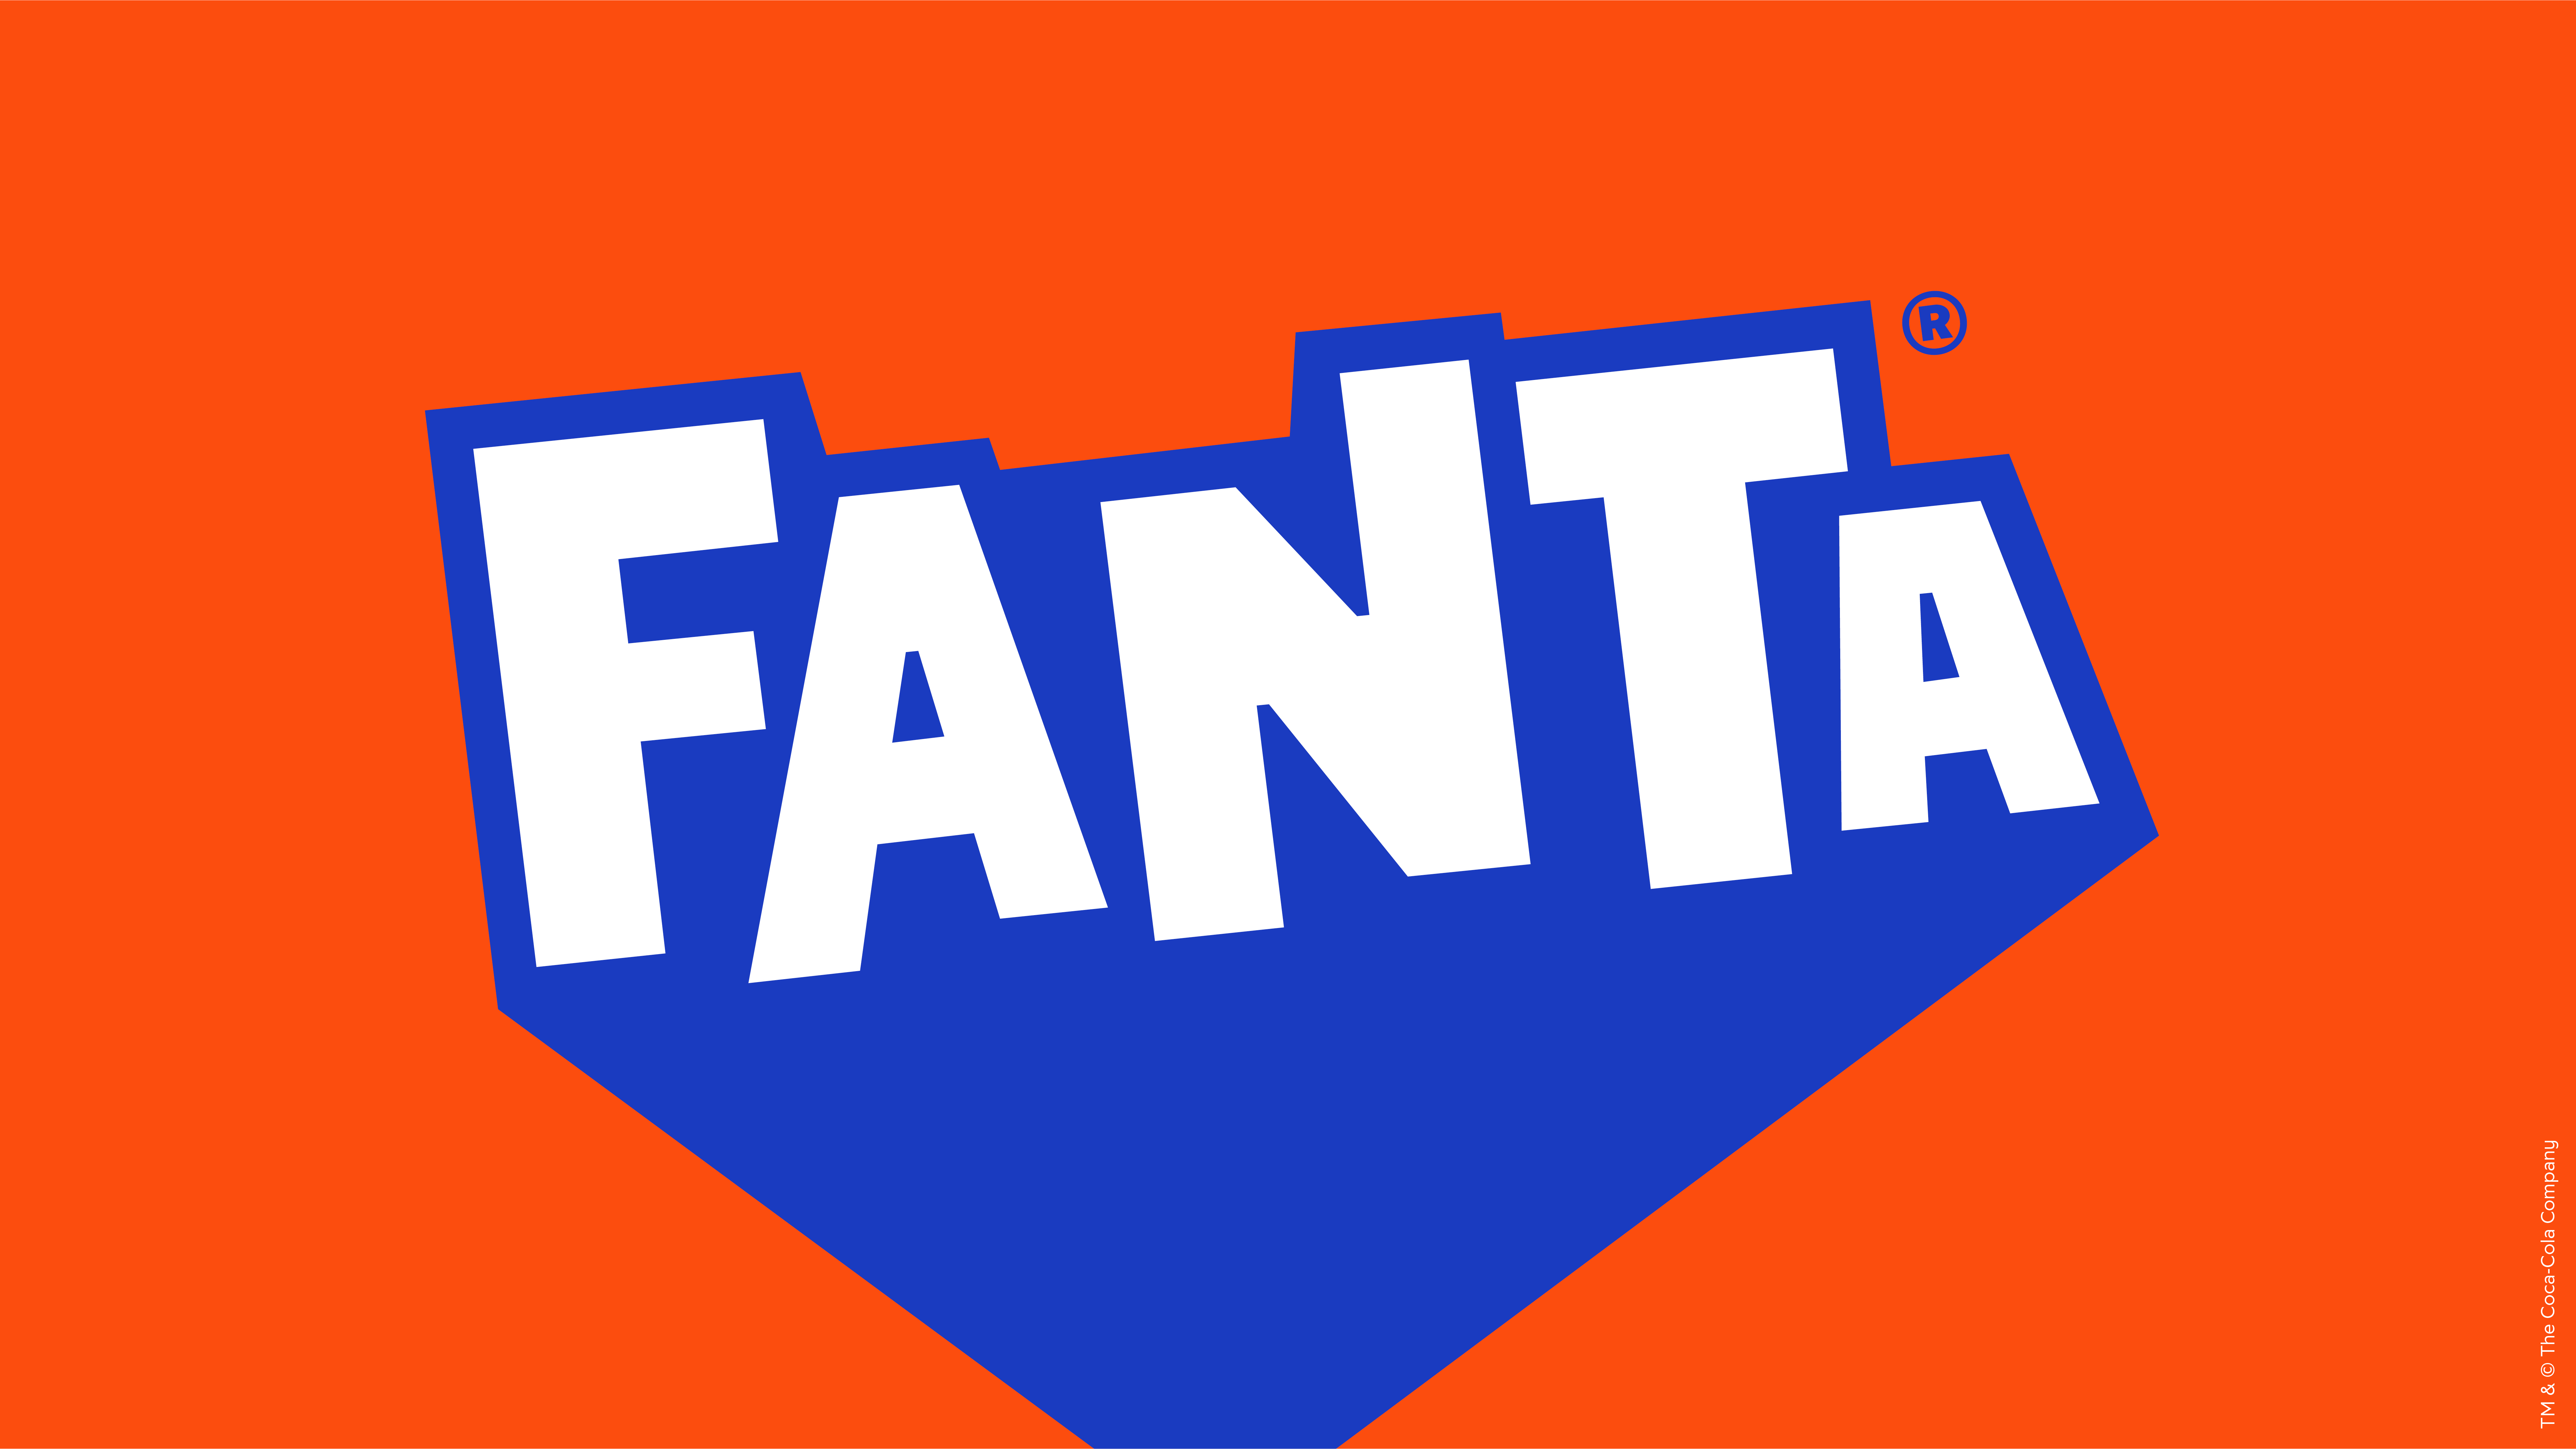 FANTA_Rebrand_Stills_001_Logo.jpg